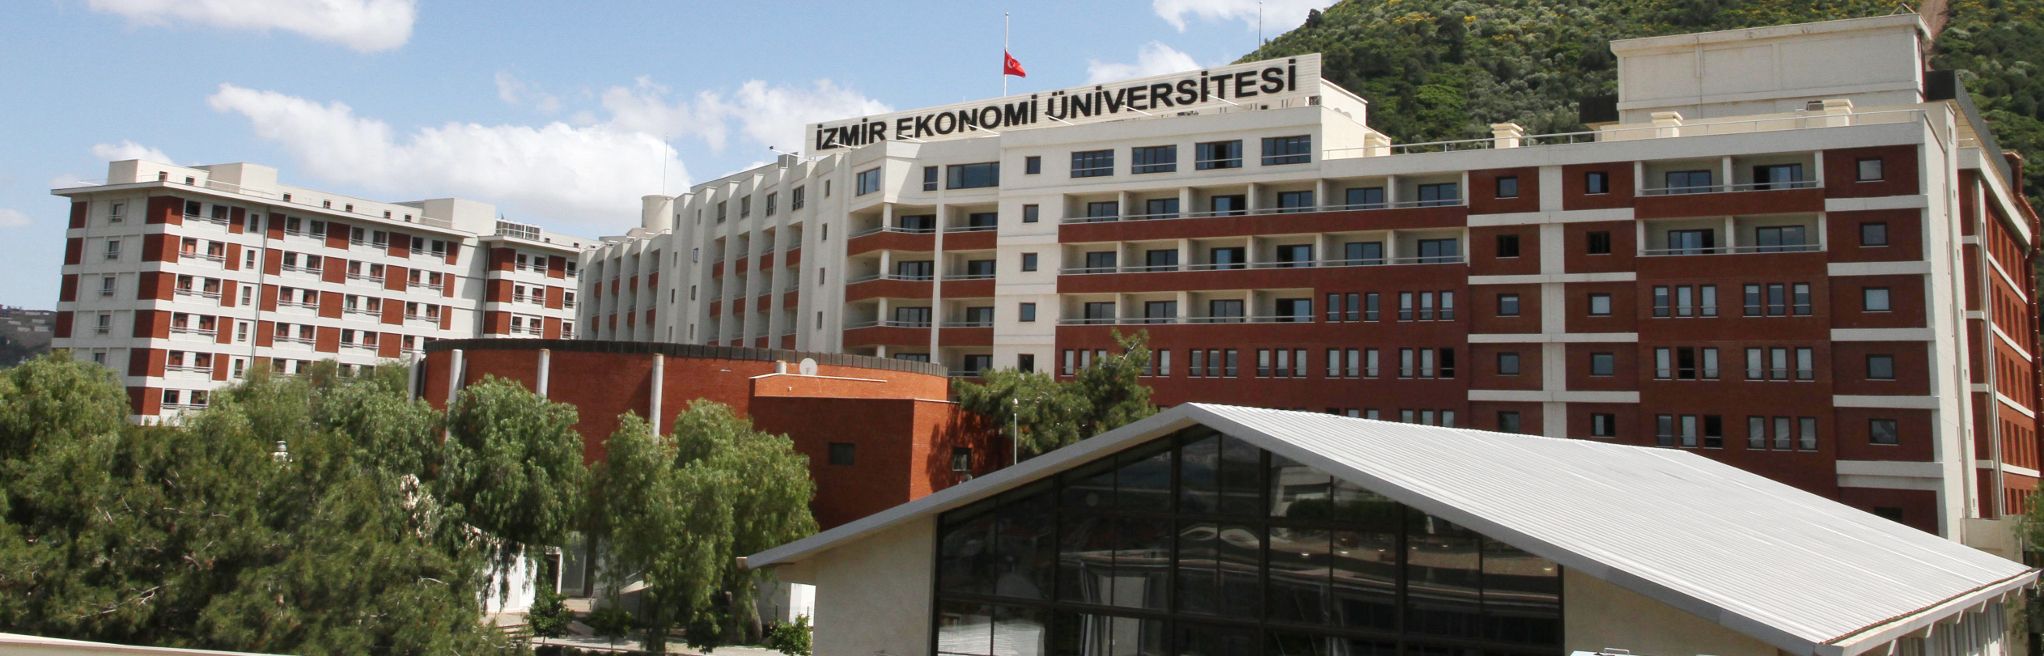 İzmir Ekonomi Üniversitesi öğretim görevlisi alıyor